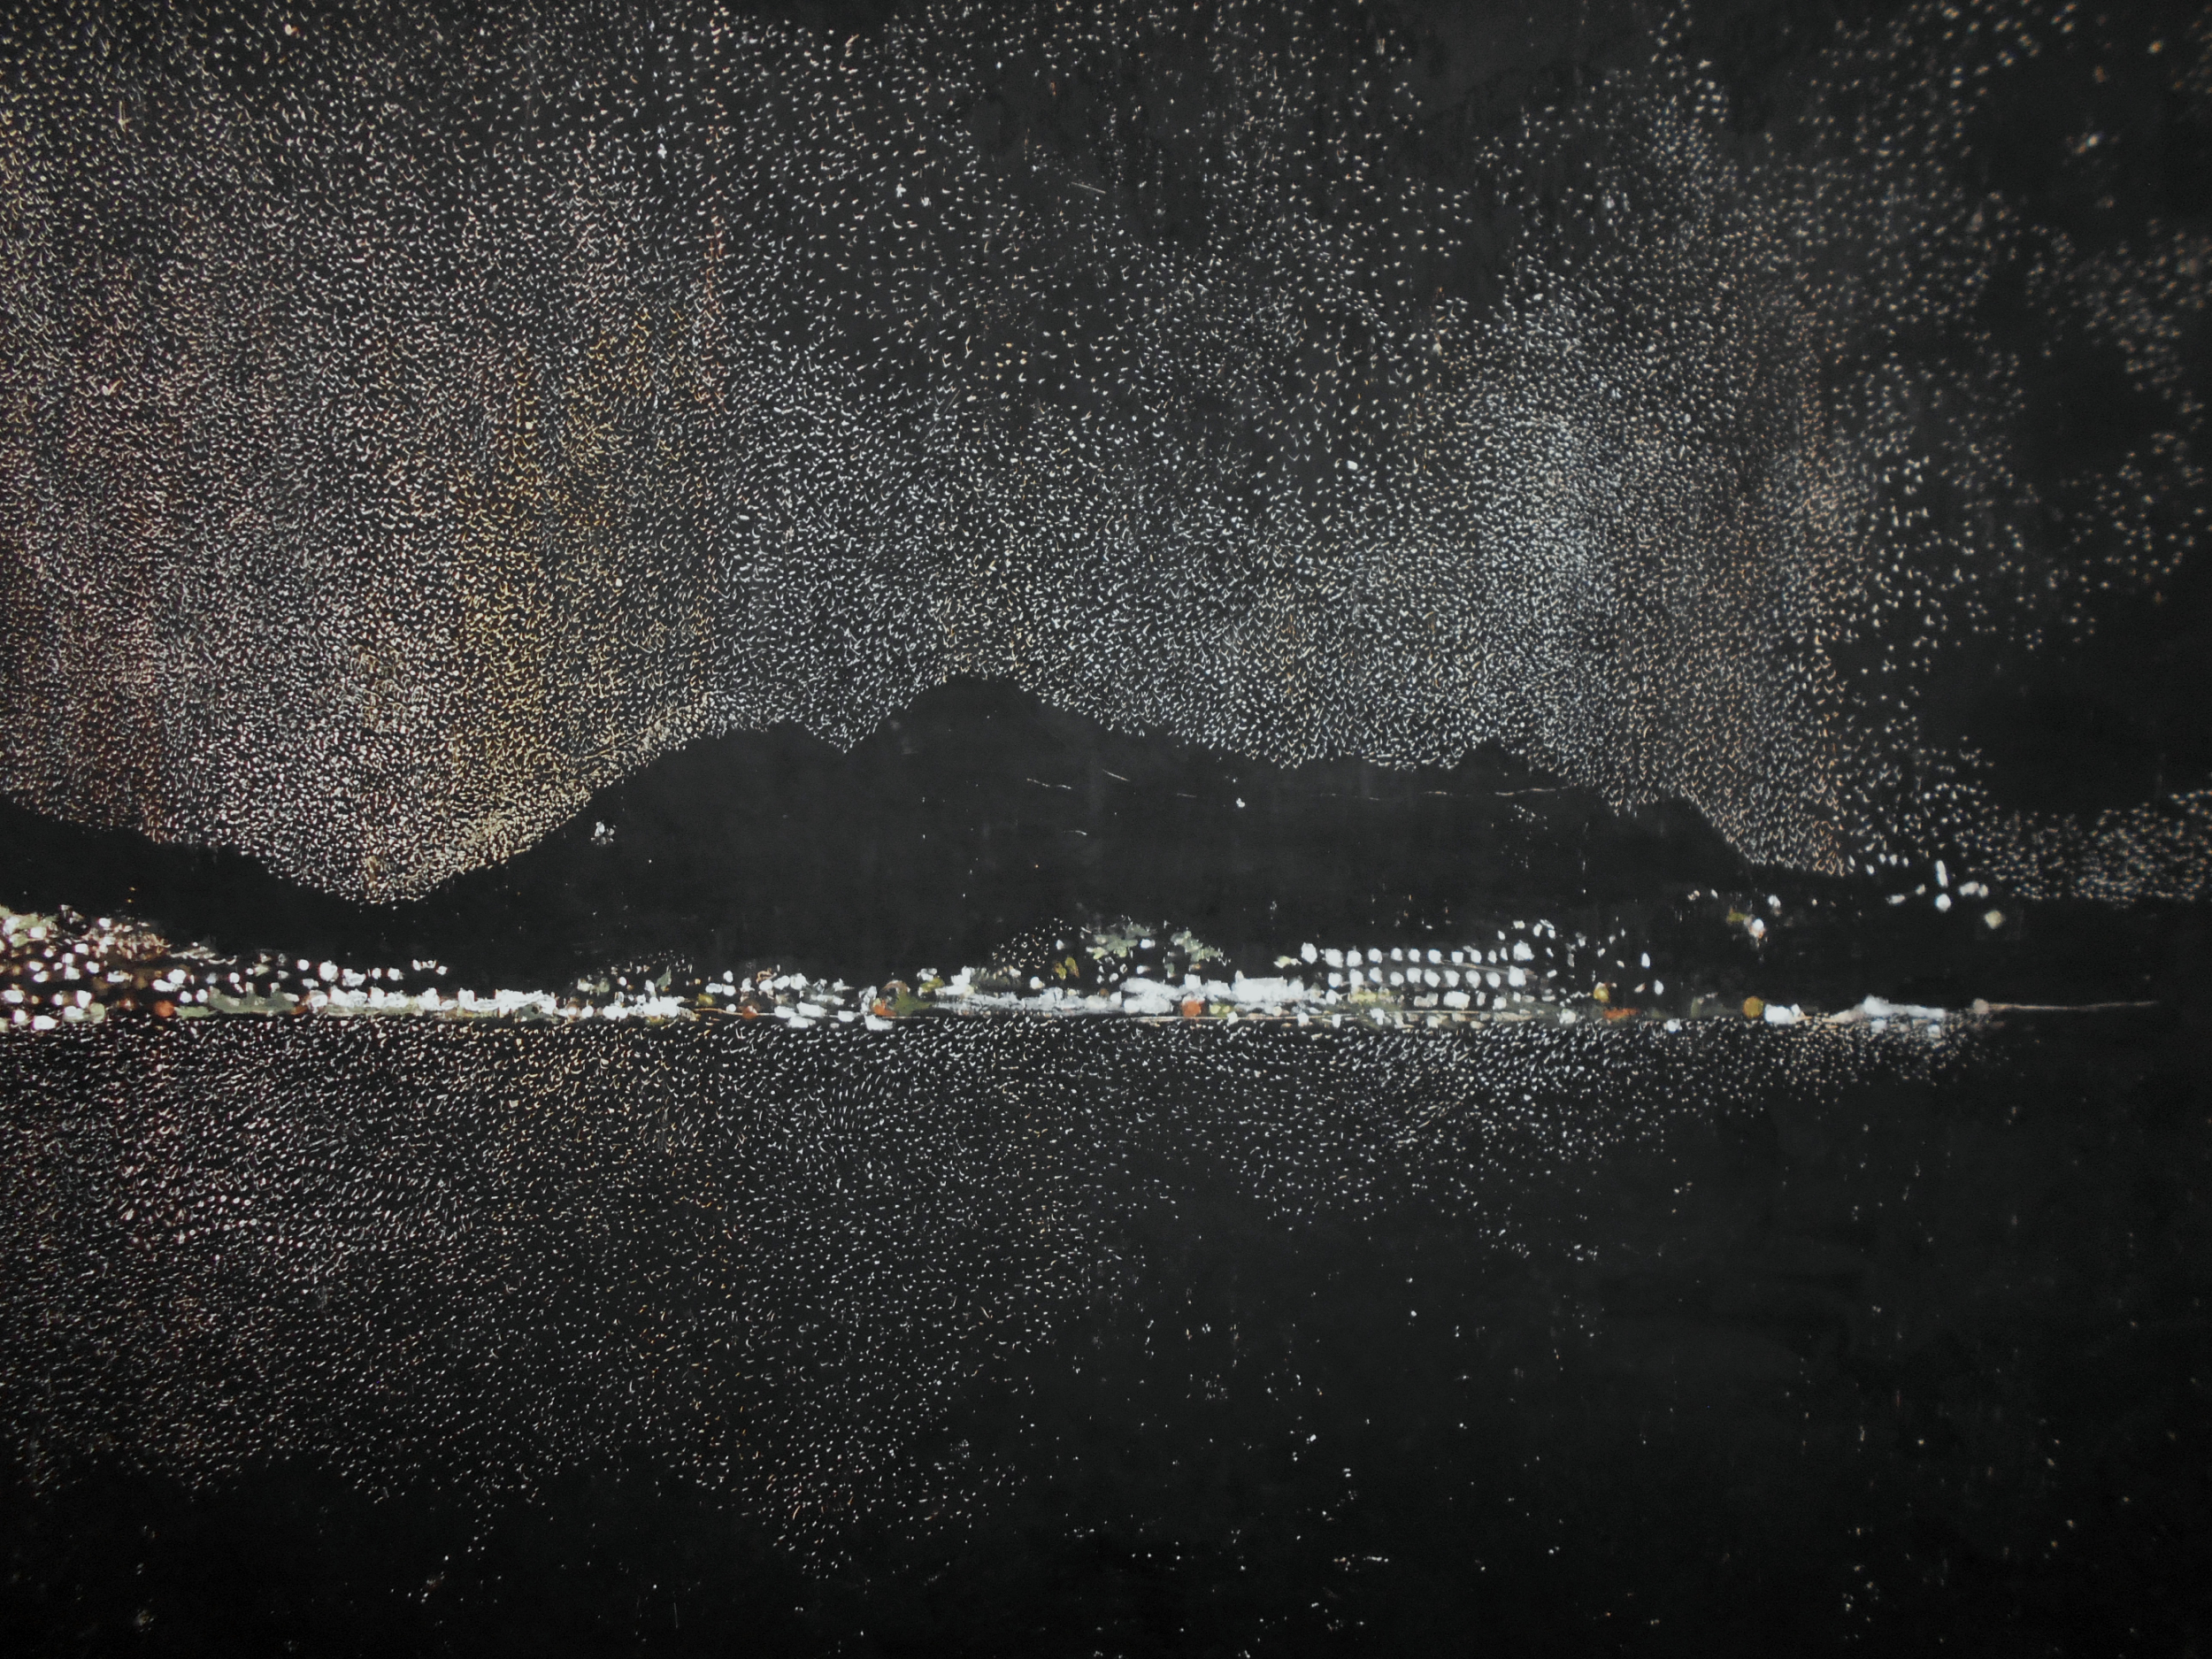 Night in Ierapetra, 70x100, Oil pastel on cardboard, 2017